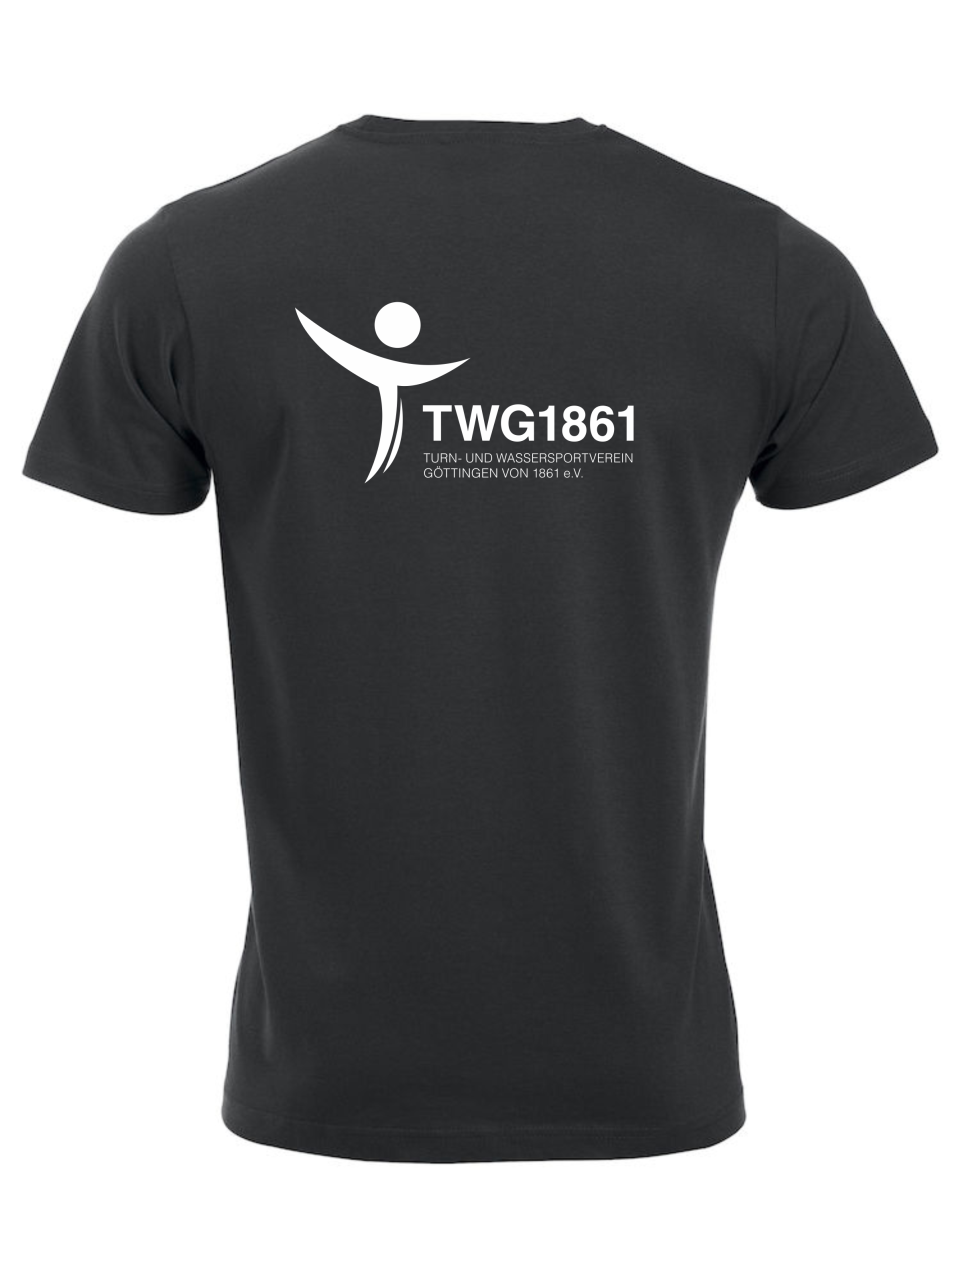 Classic T-Shirt mit TWG-Logo auf den Rücken